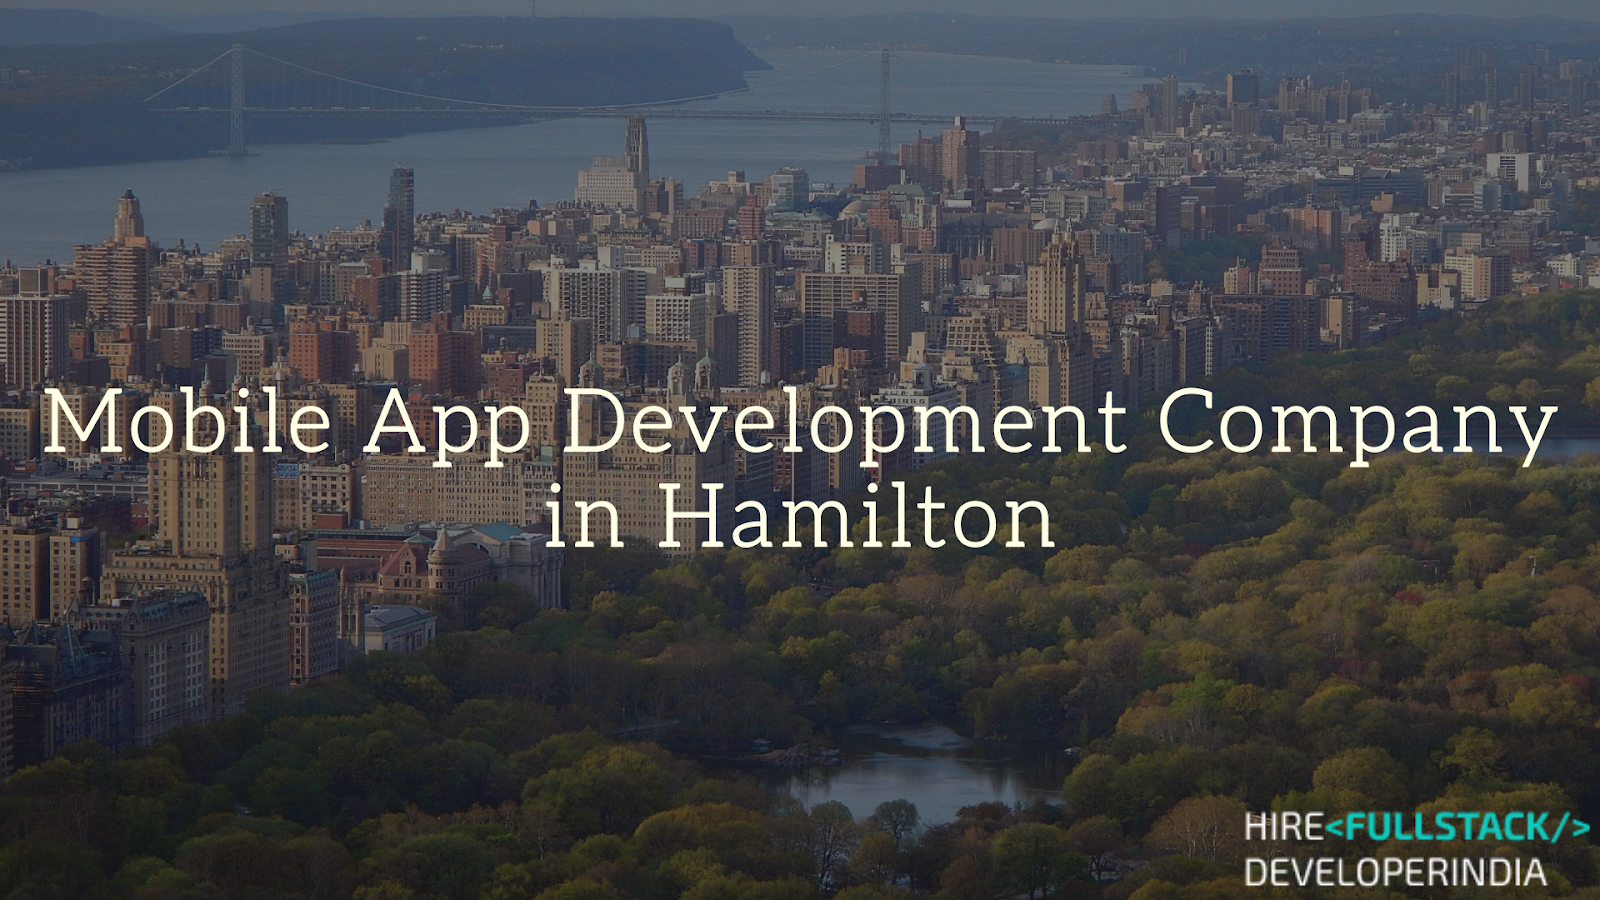 Mobile App Development Company in Hamilton